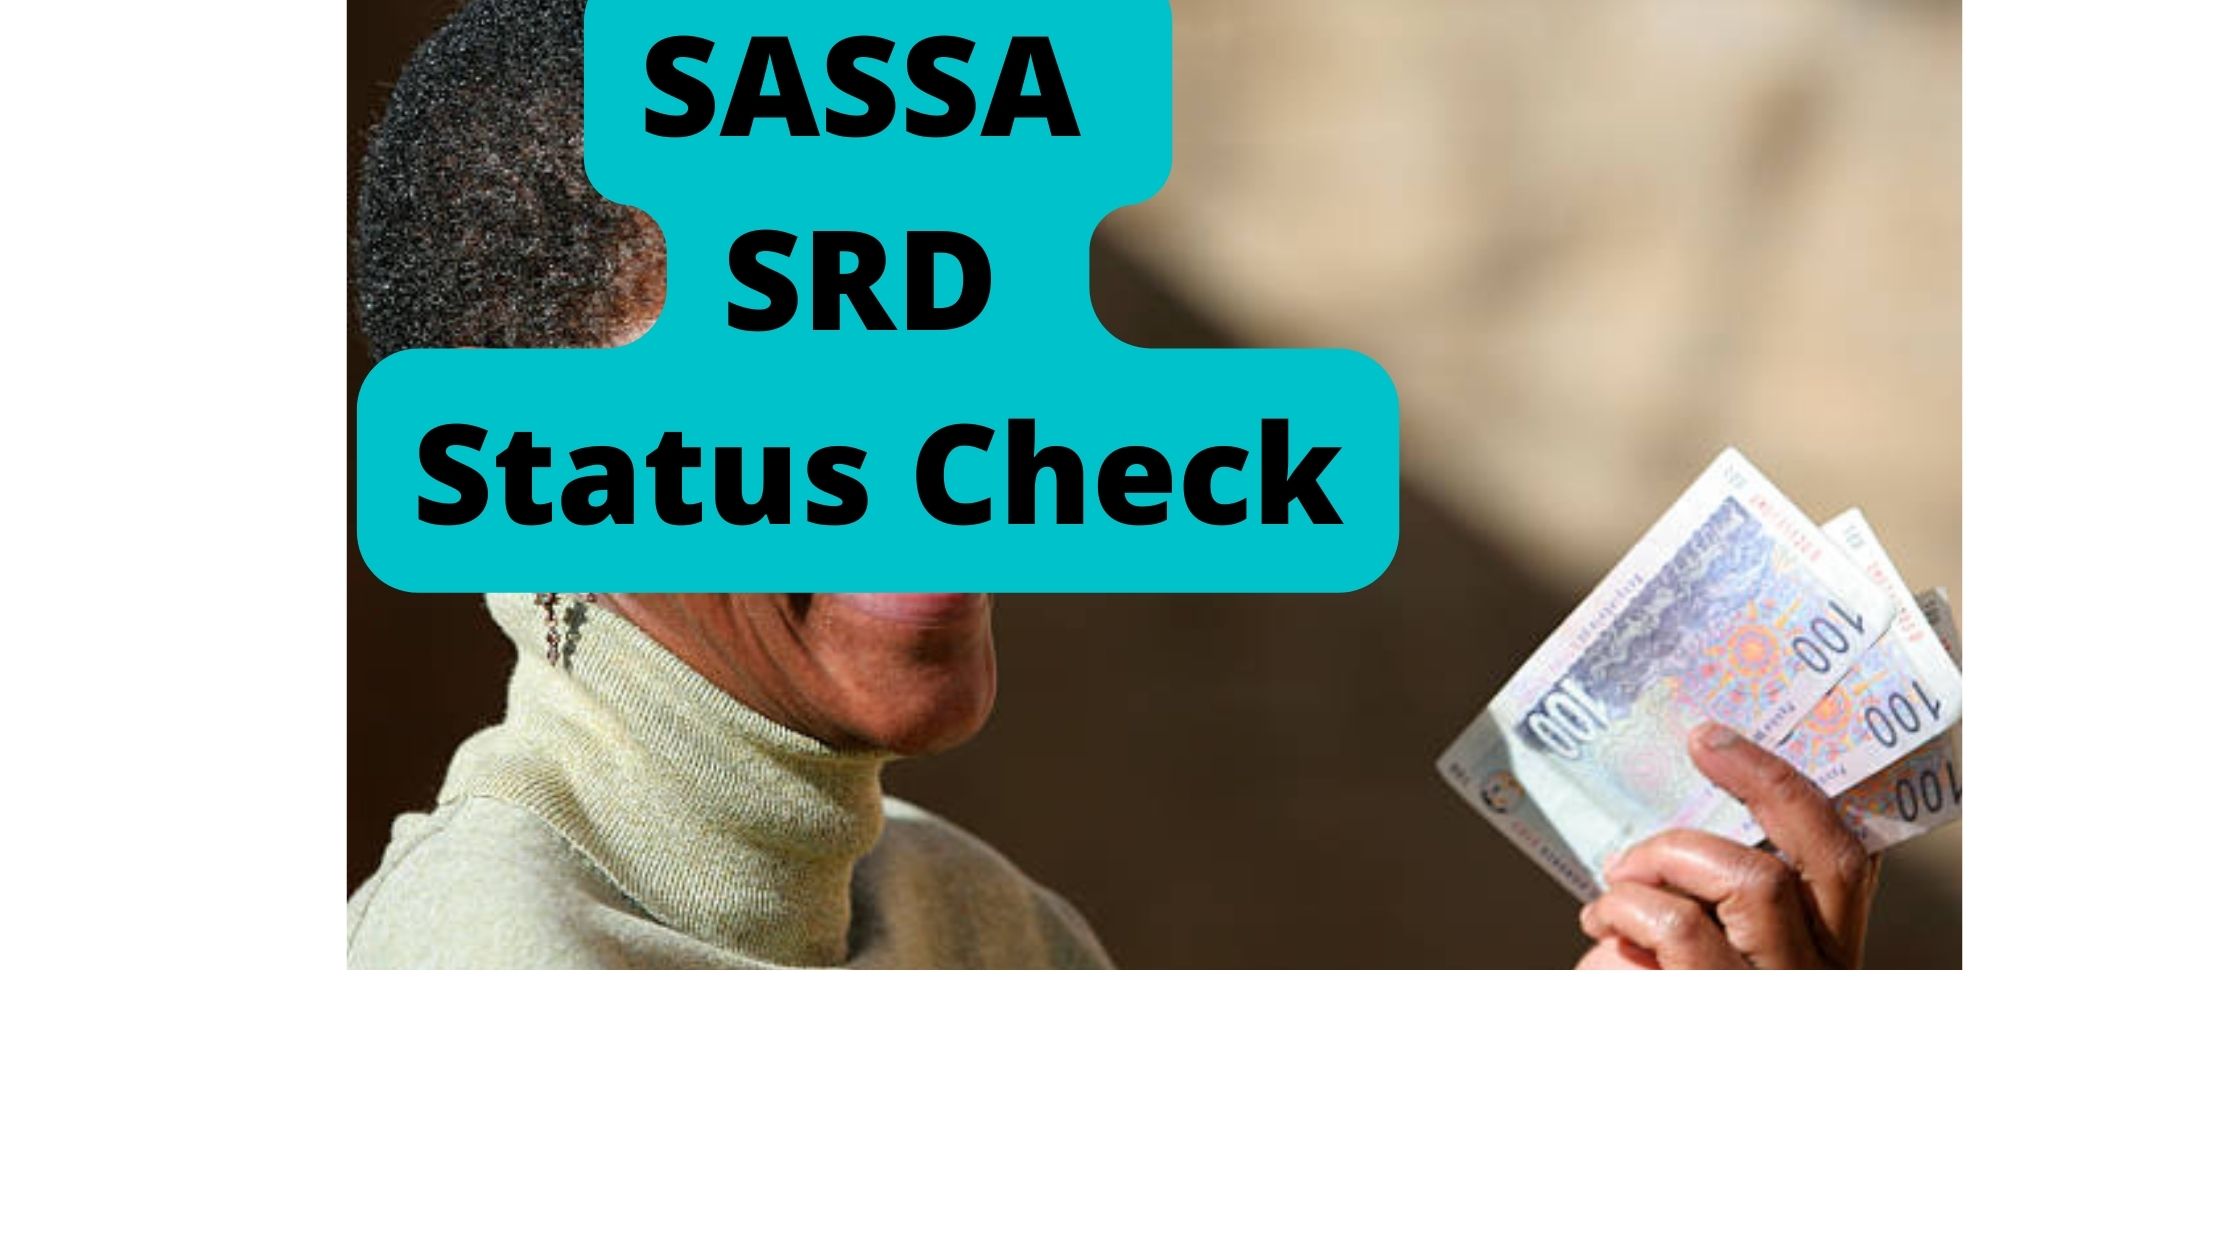 SASSA SRD Status Check